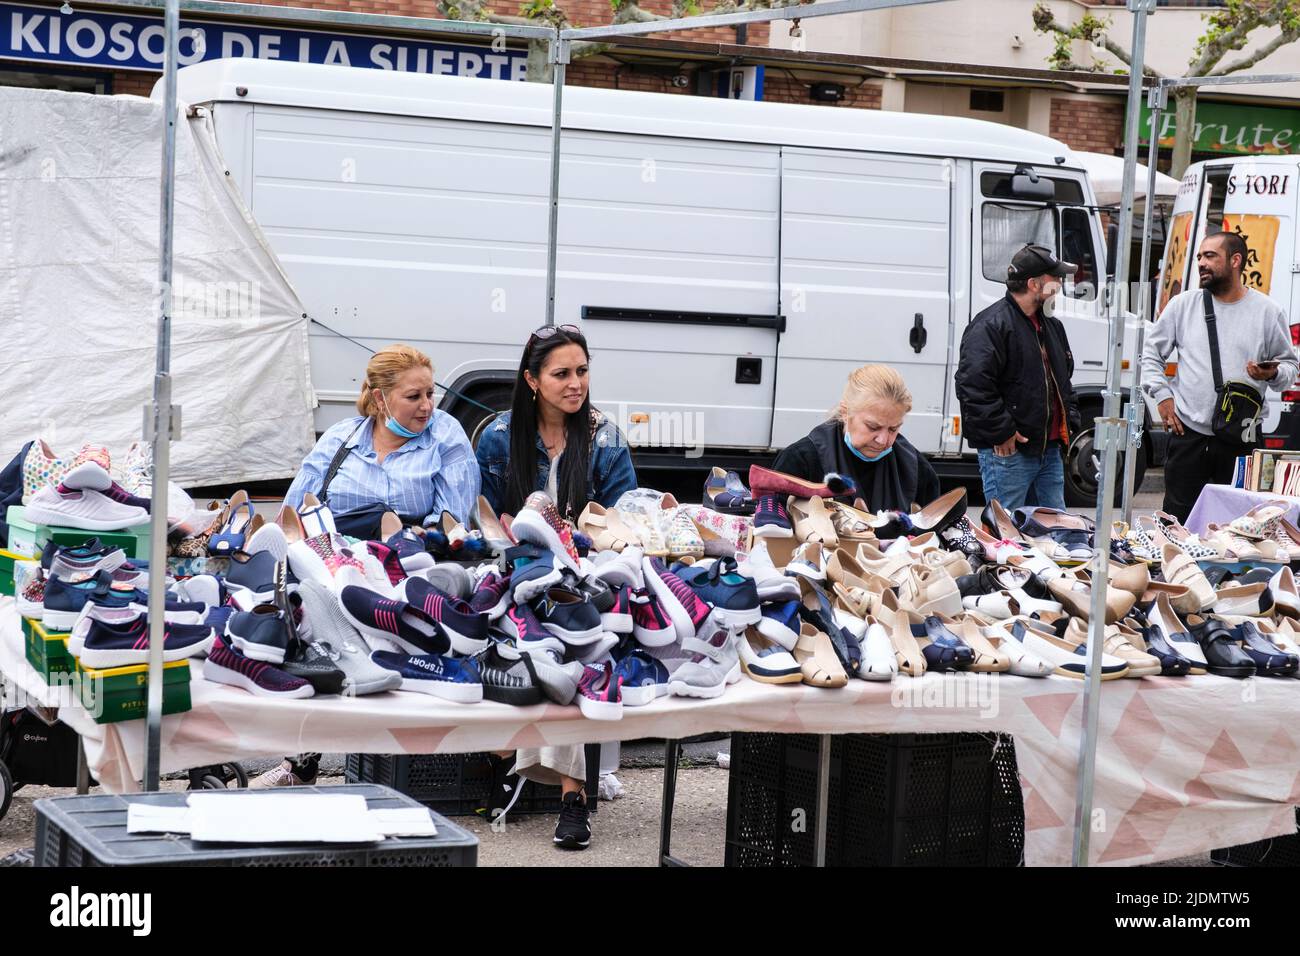 Spain, Astorga, Castilla y Leon. Tuesday Market, Shoe Vendor. Stock Photo